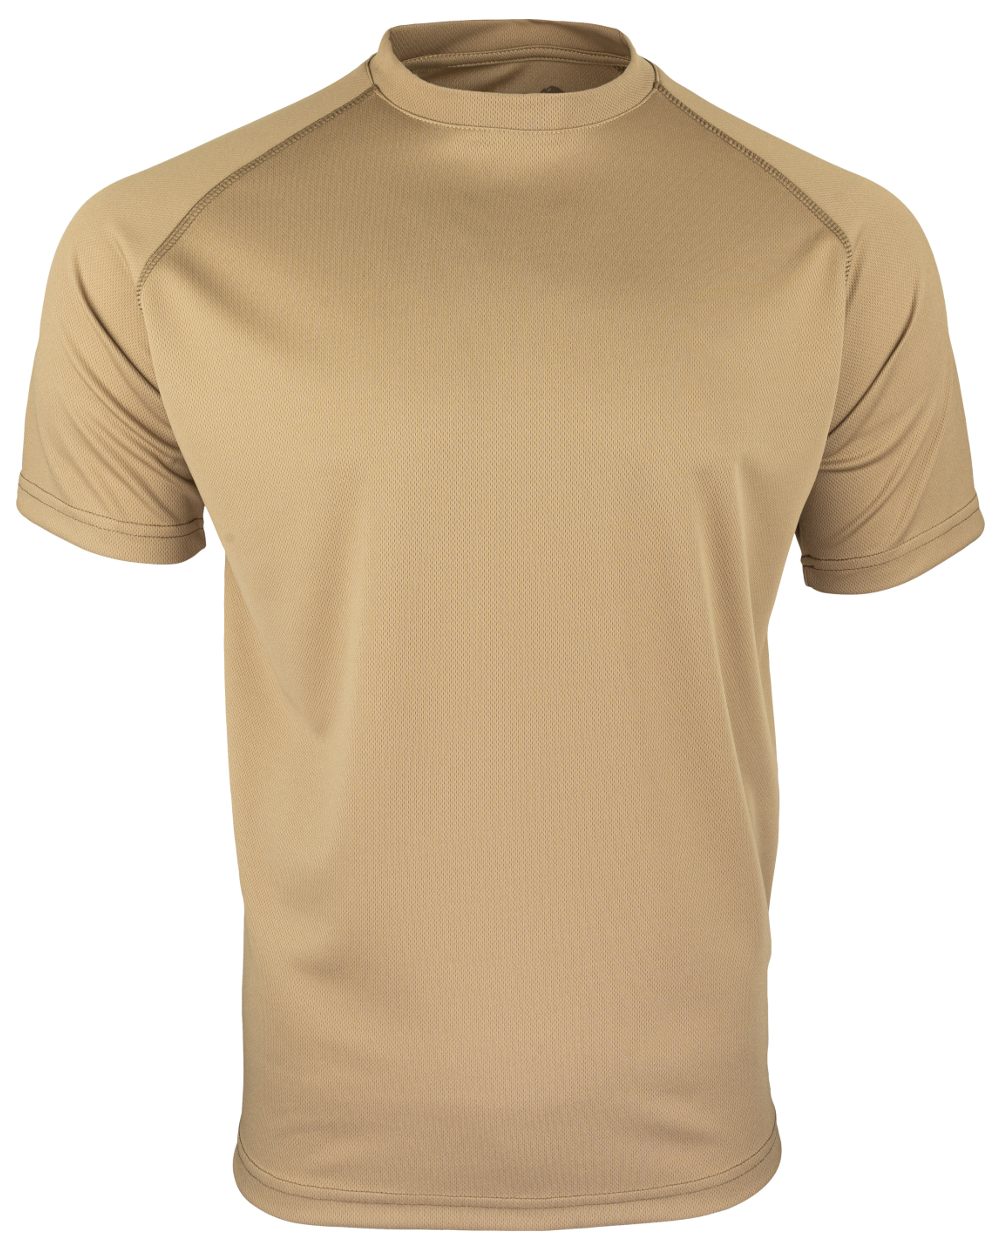 Viper Mesh-Tech T-Shirt in Coyote 